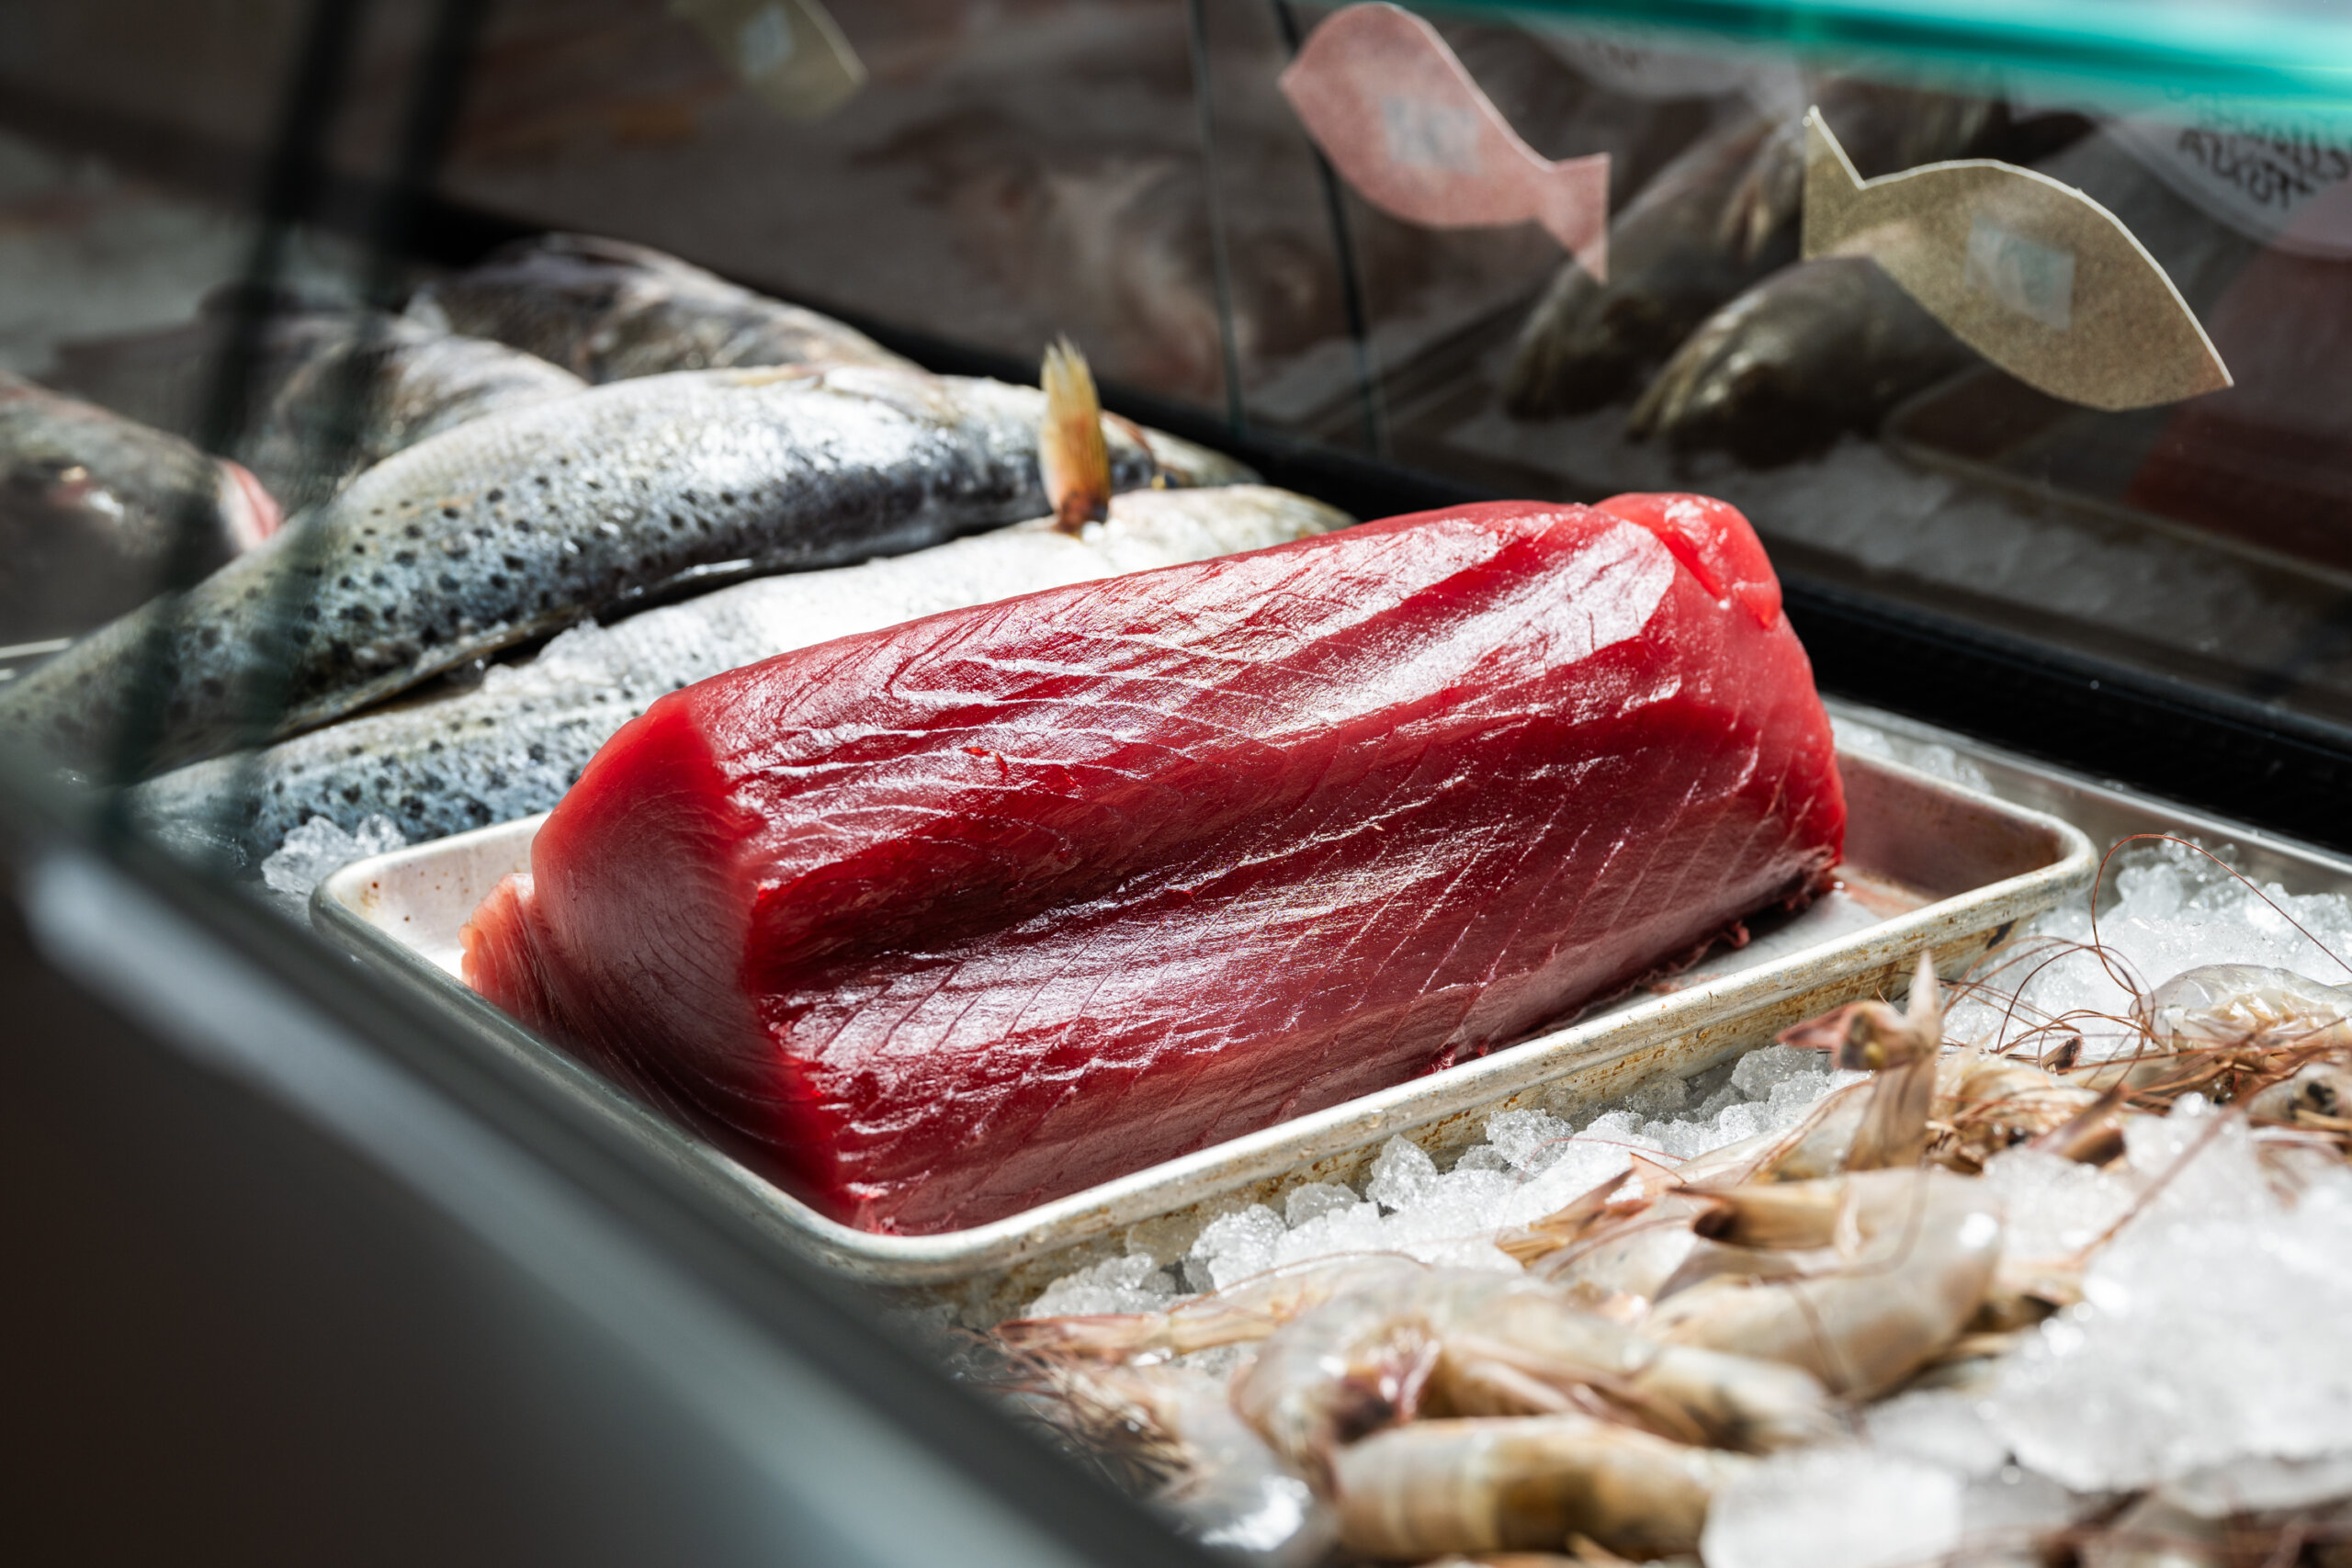 Gulf-caught yellowfin tuna on display